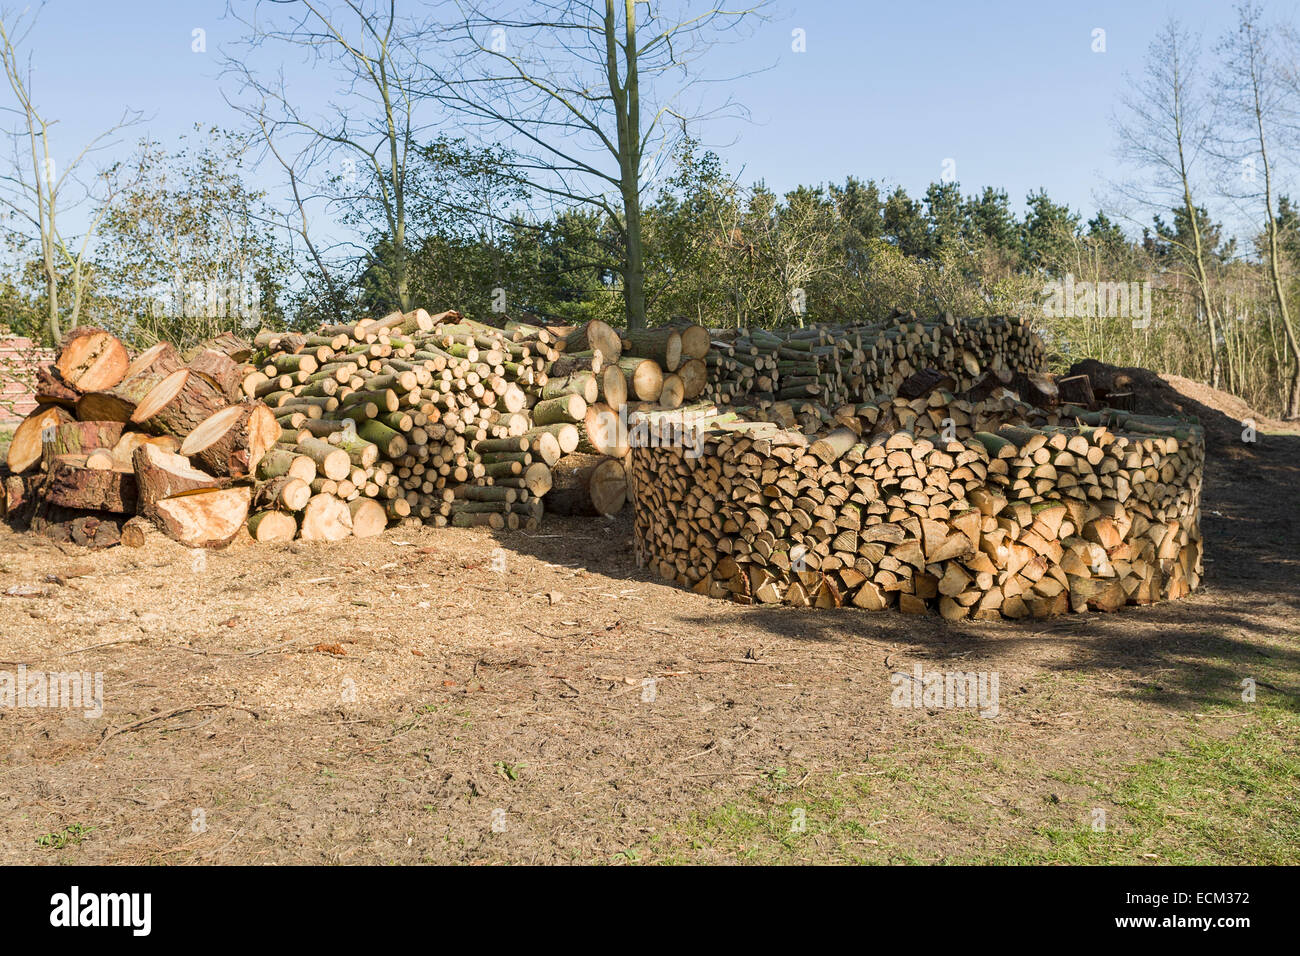 La construction d'une maison en bois (Holz Hausen) - une méthode d'empilage de bois de chauffage pour sécher Banque D'Images